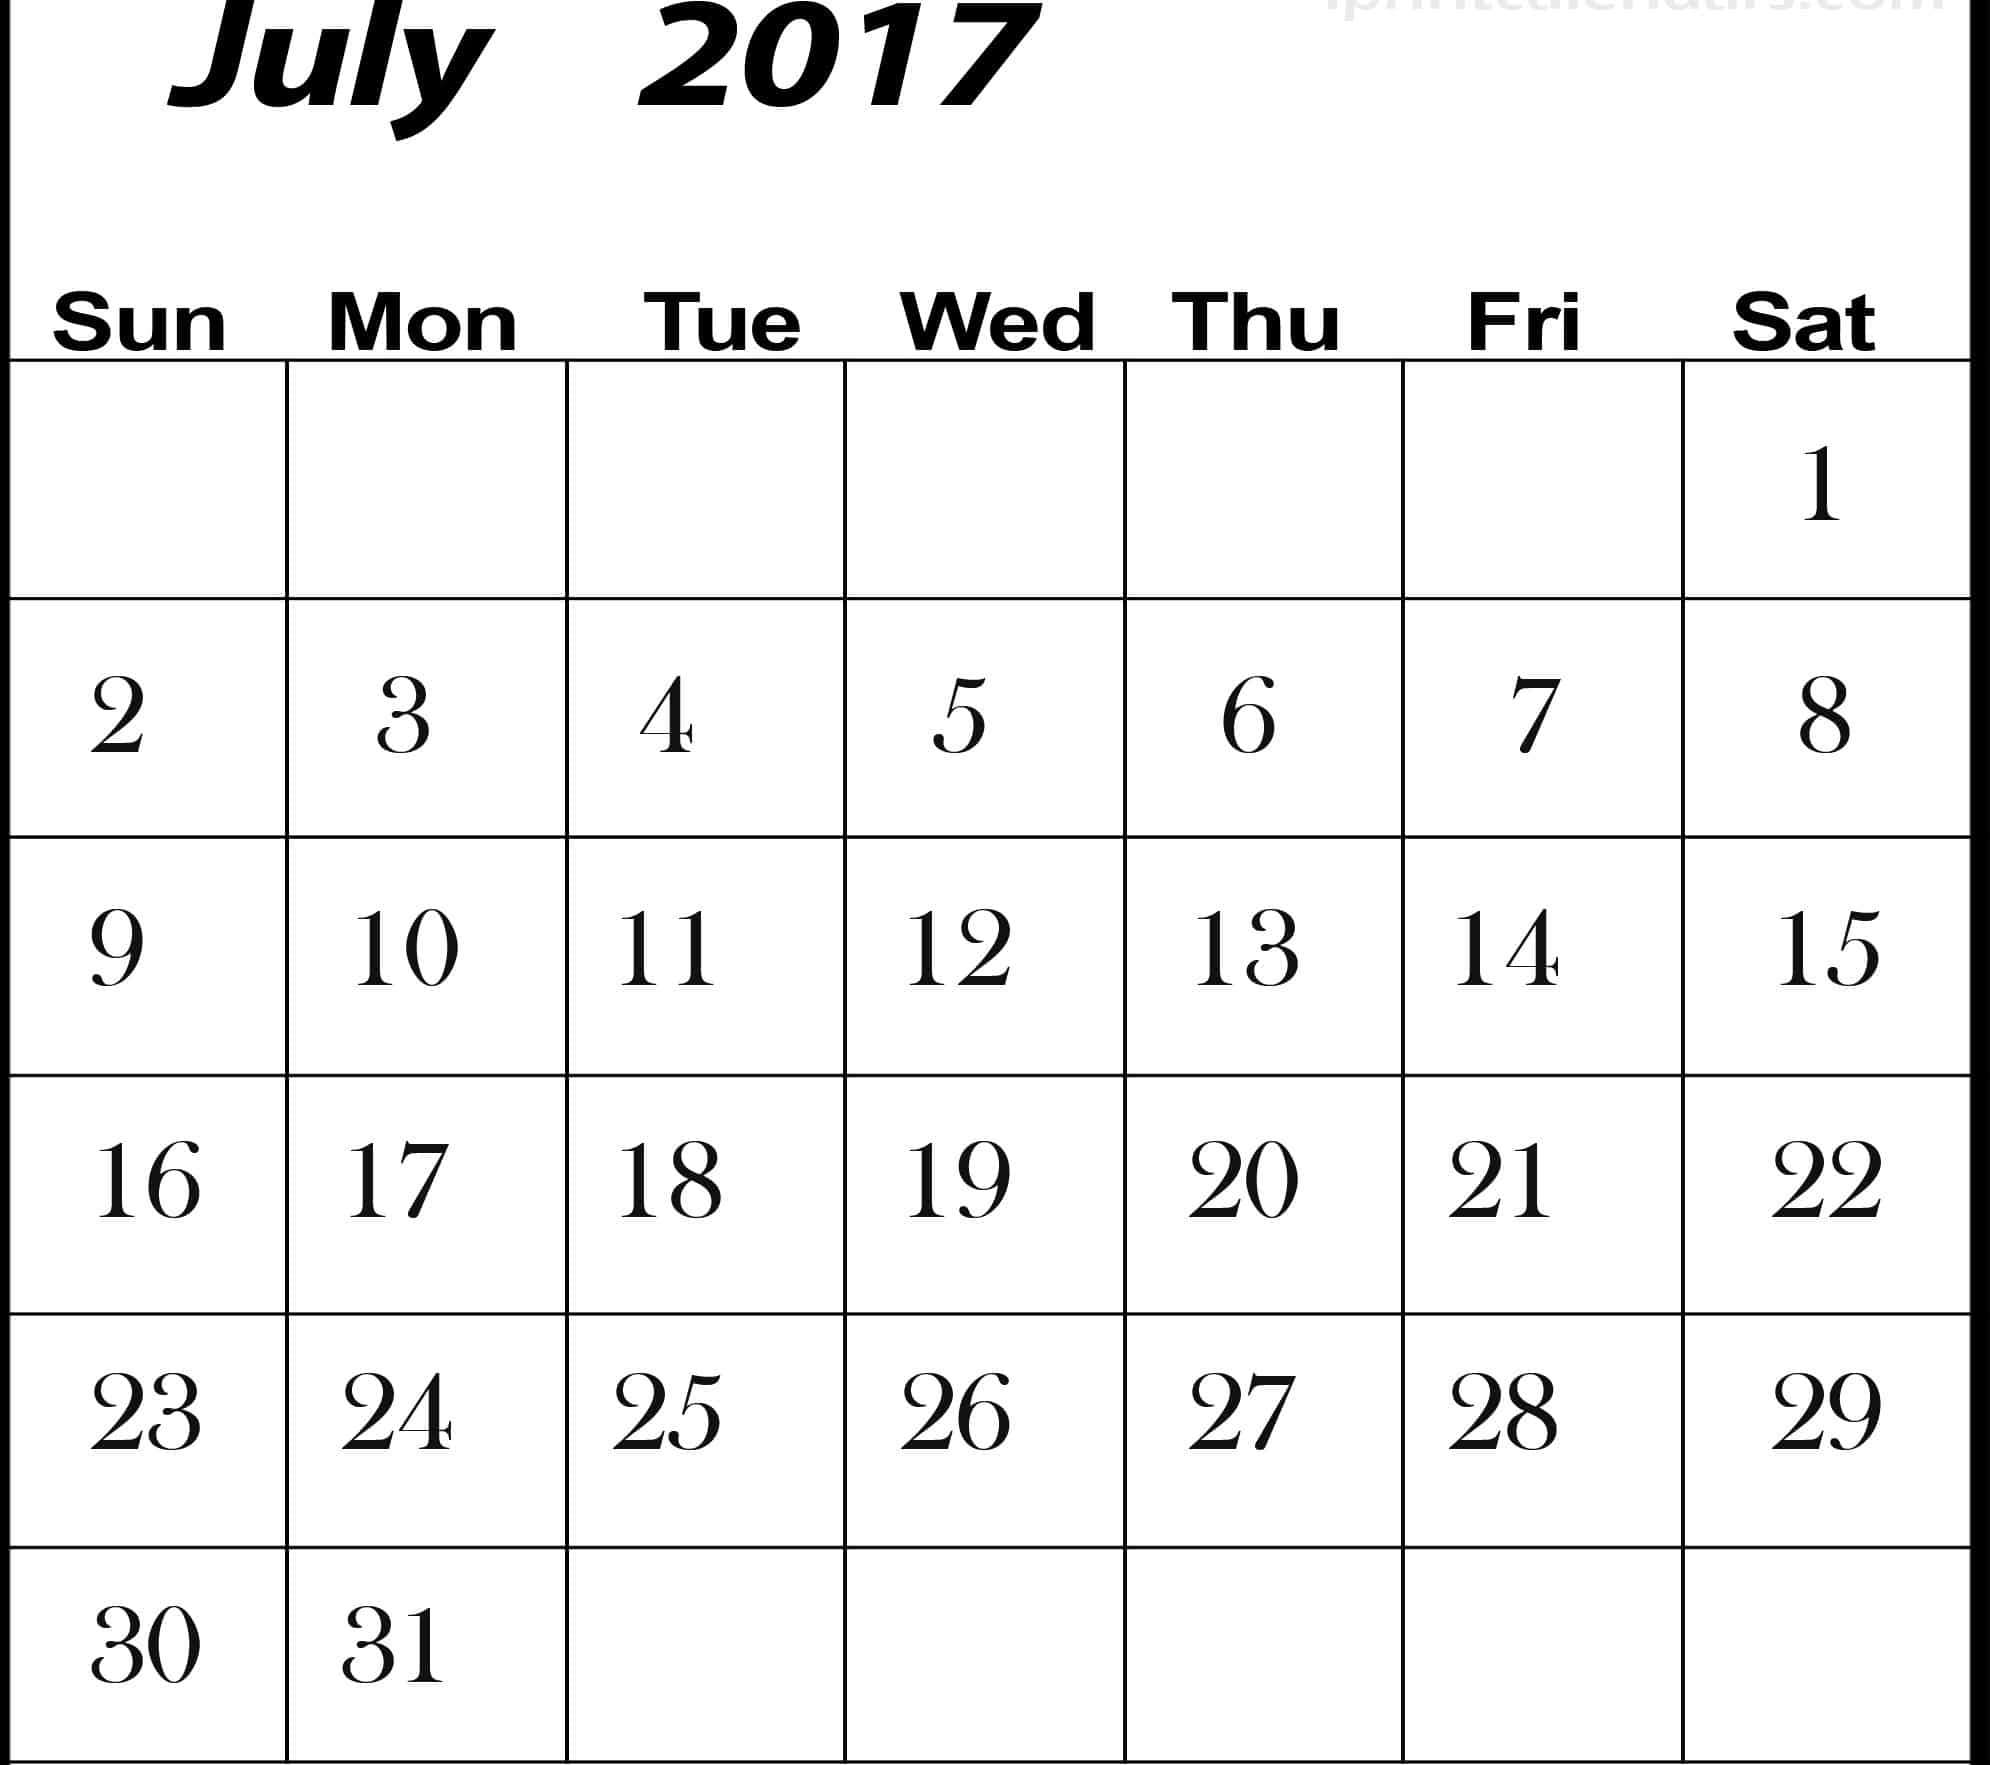 July 2017 Calendar Images